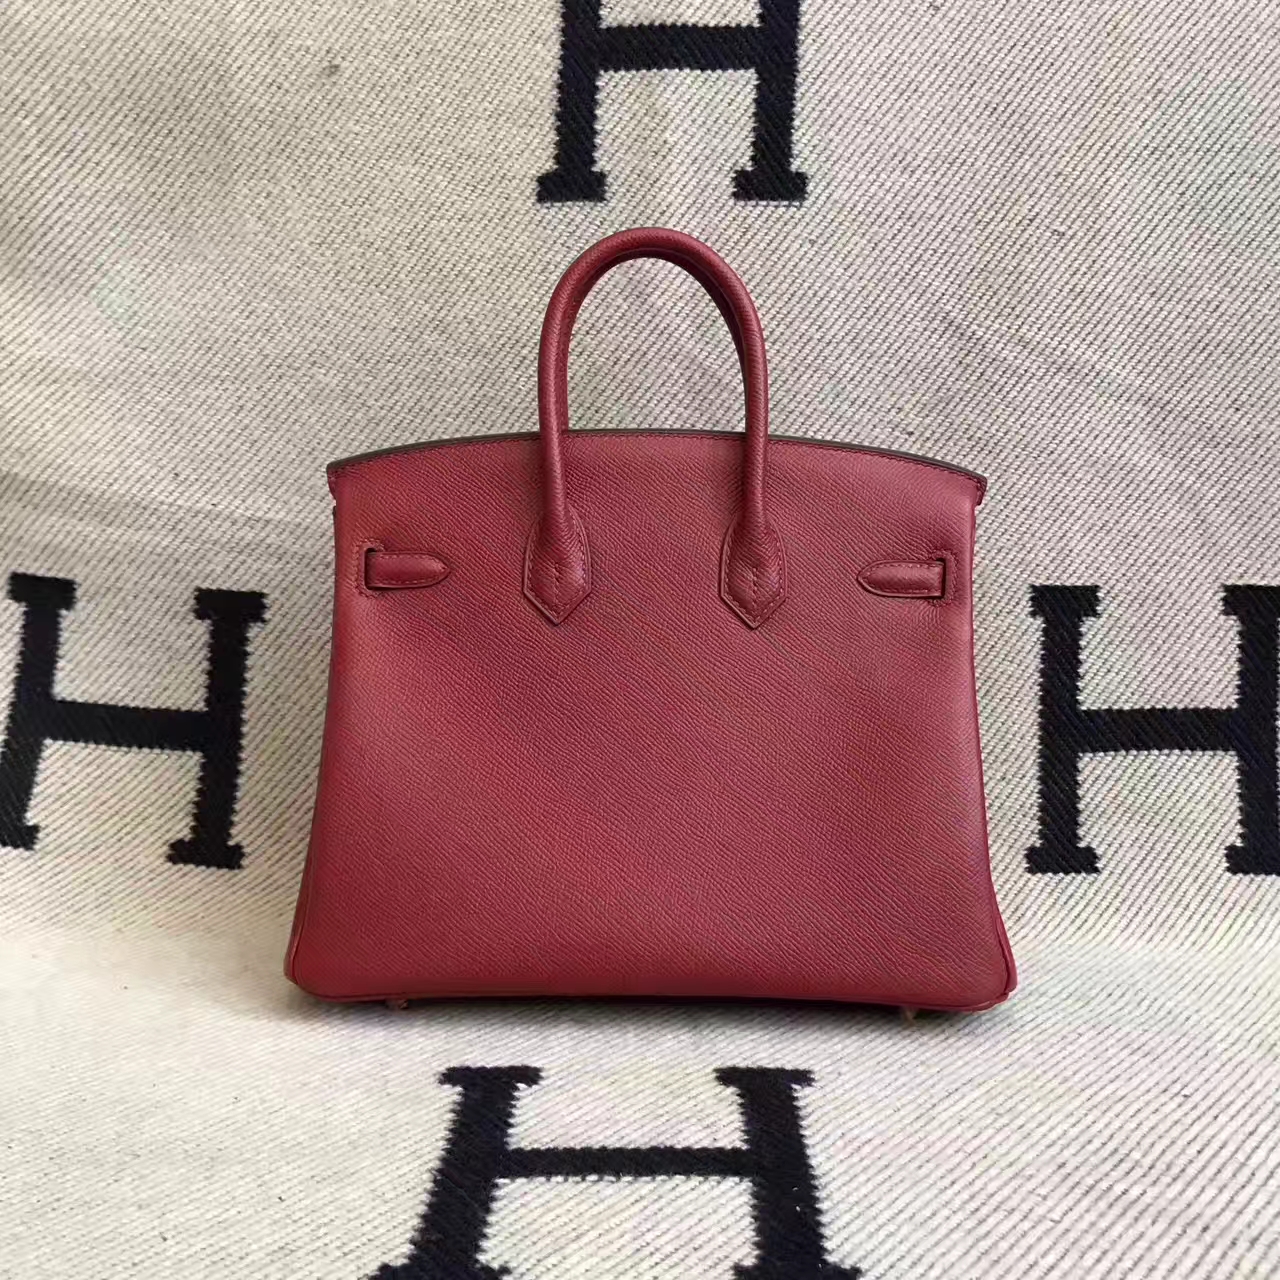 New Arrival Hermes K1 Rouge Grenade Epsom Leather Birkin 25cm Handbag